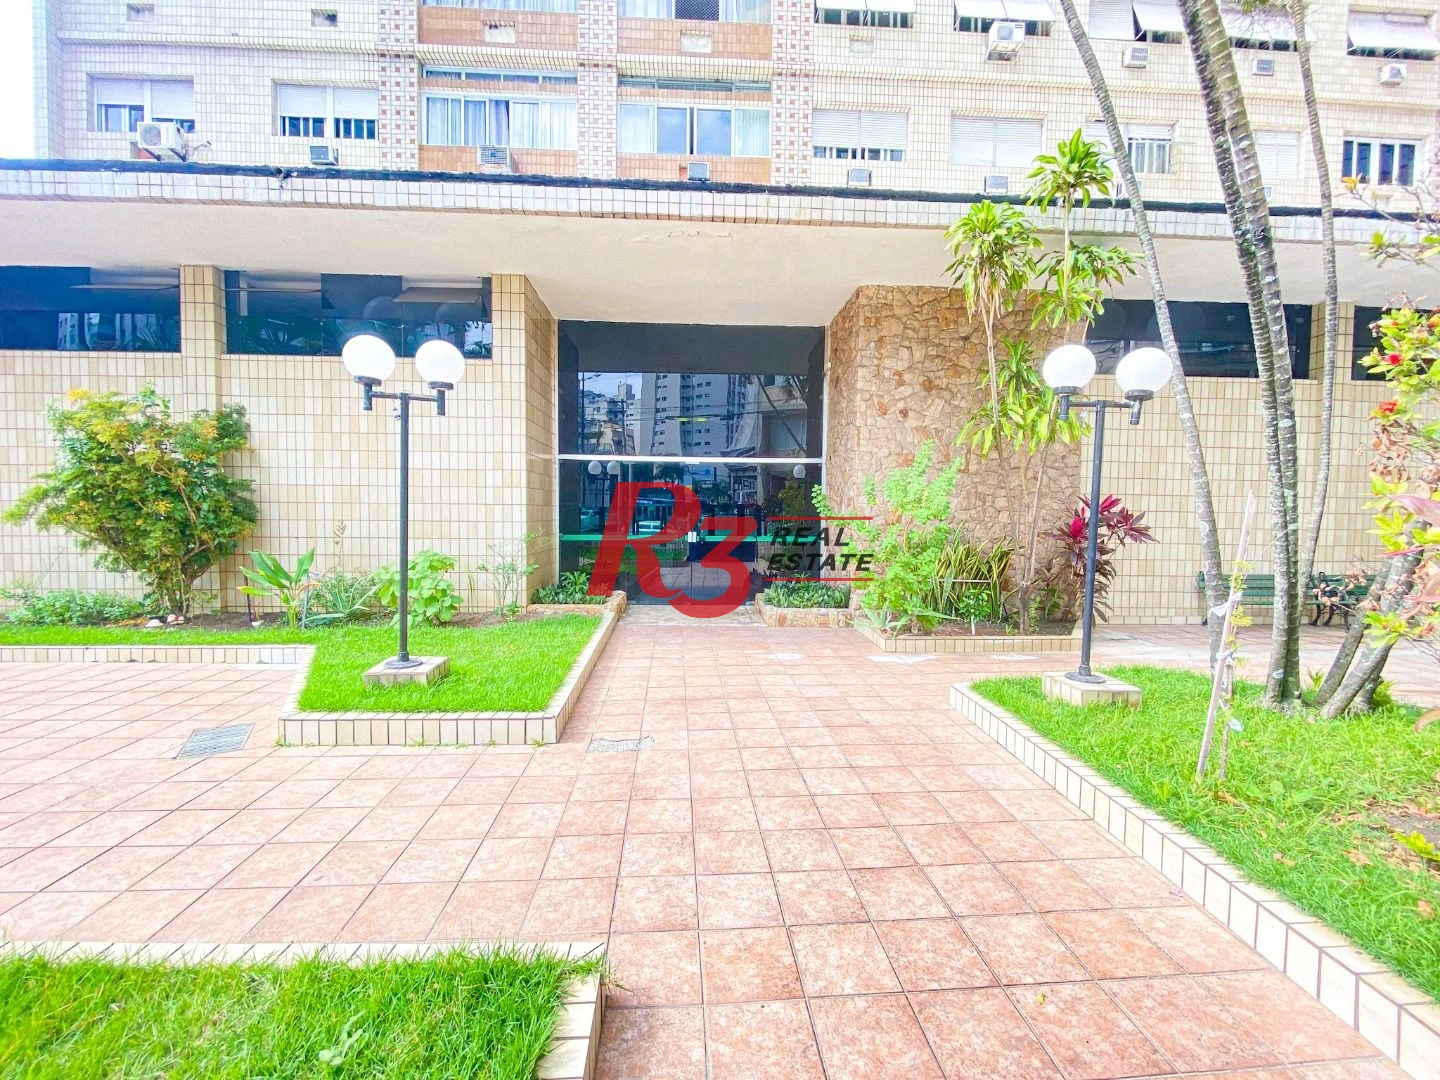 Apartamento à venda, 110 m² por R$ 521.000,00 - José Menino - Santos/SP